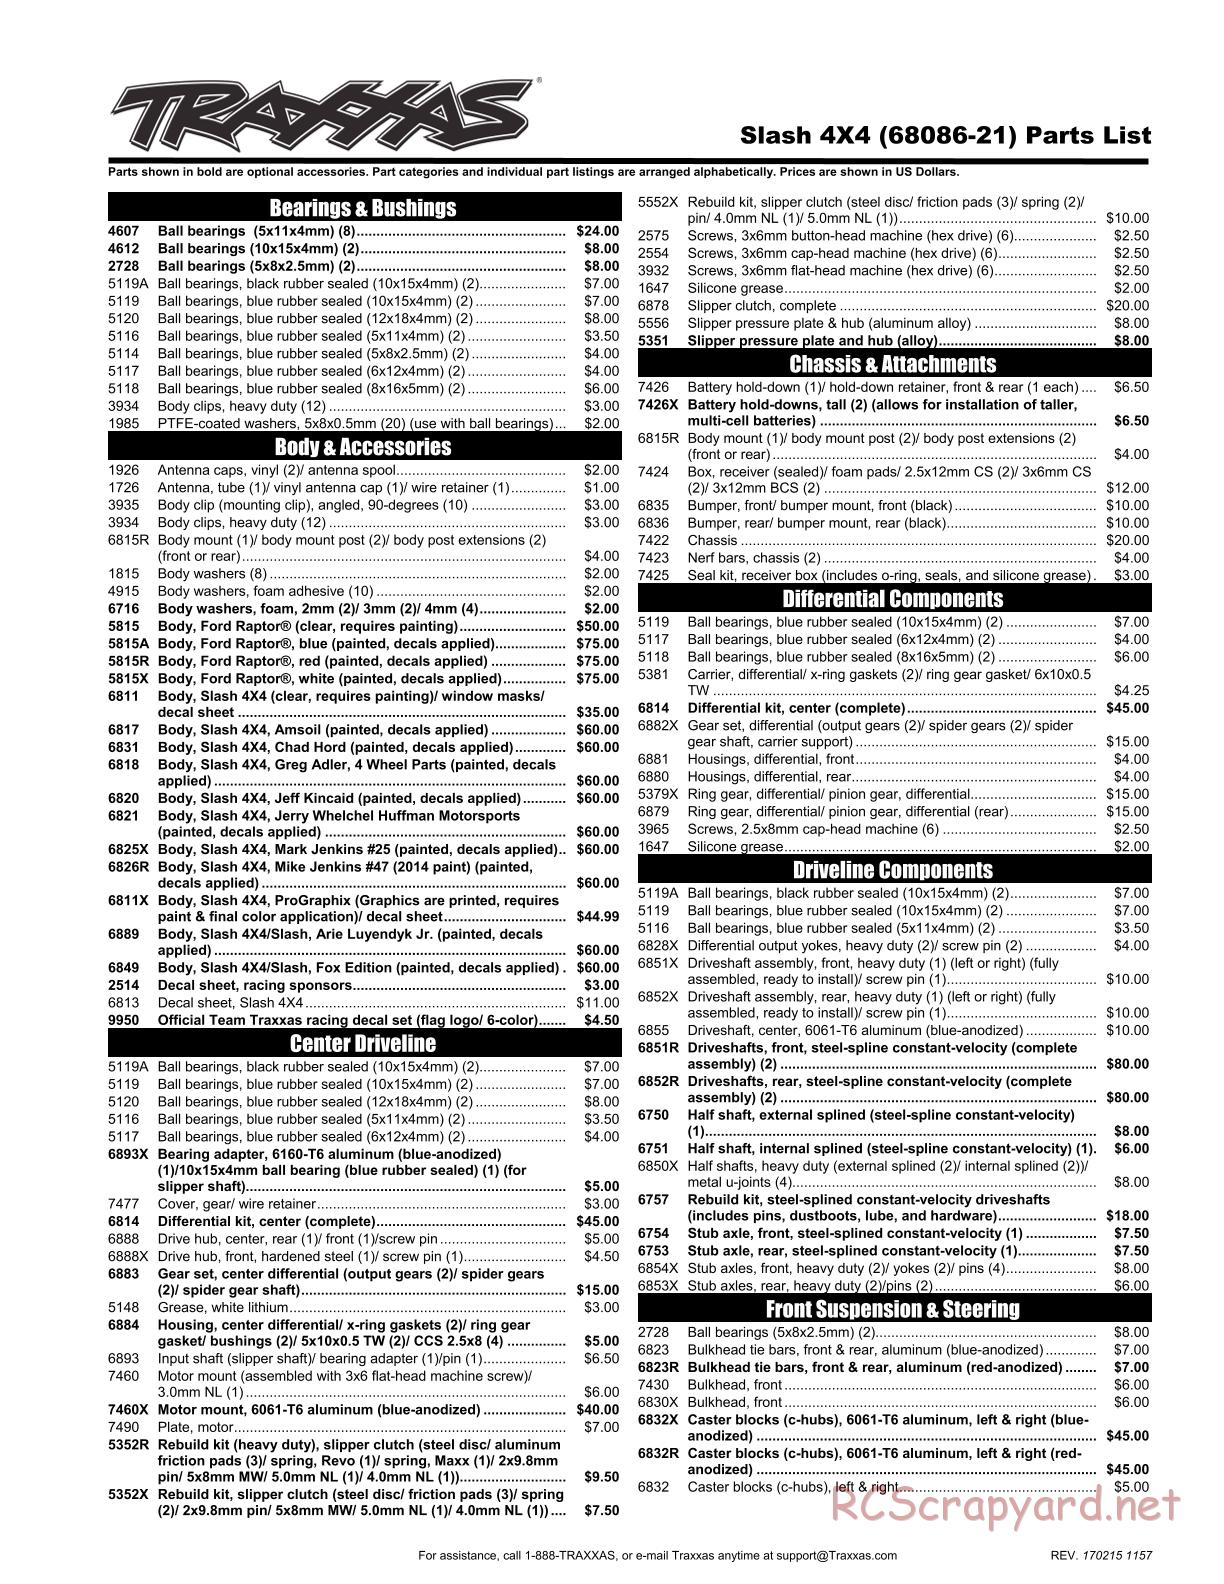 Traxxas - Slash 4x4 TSM OBA - Parts List - Page 1